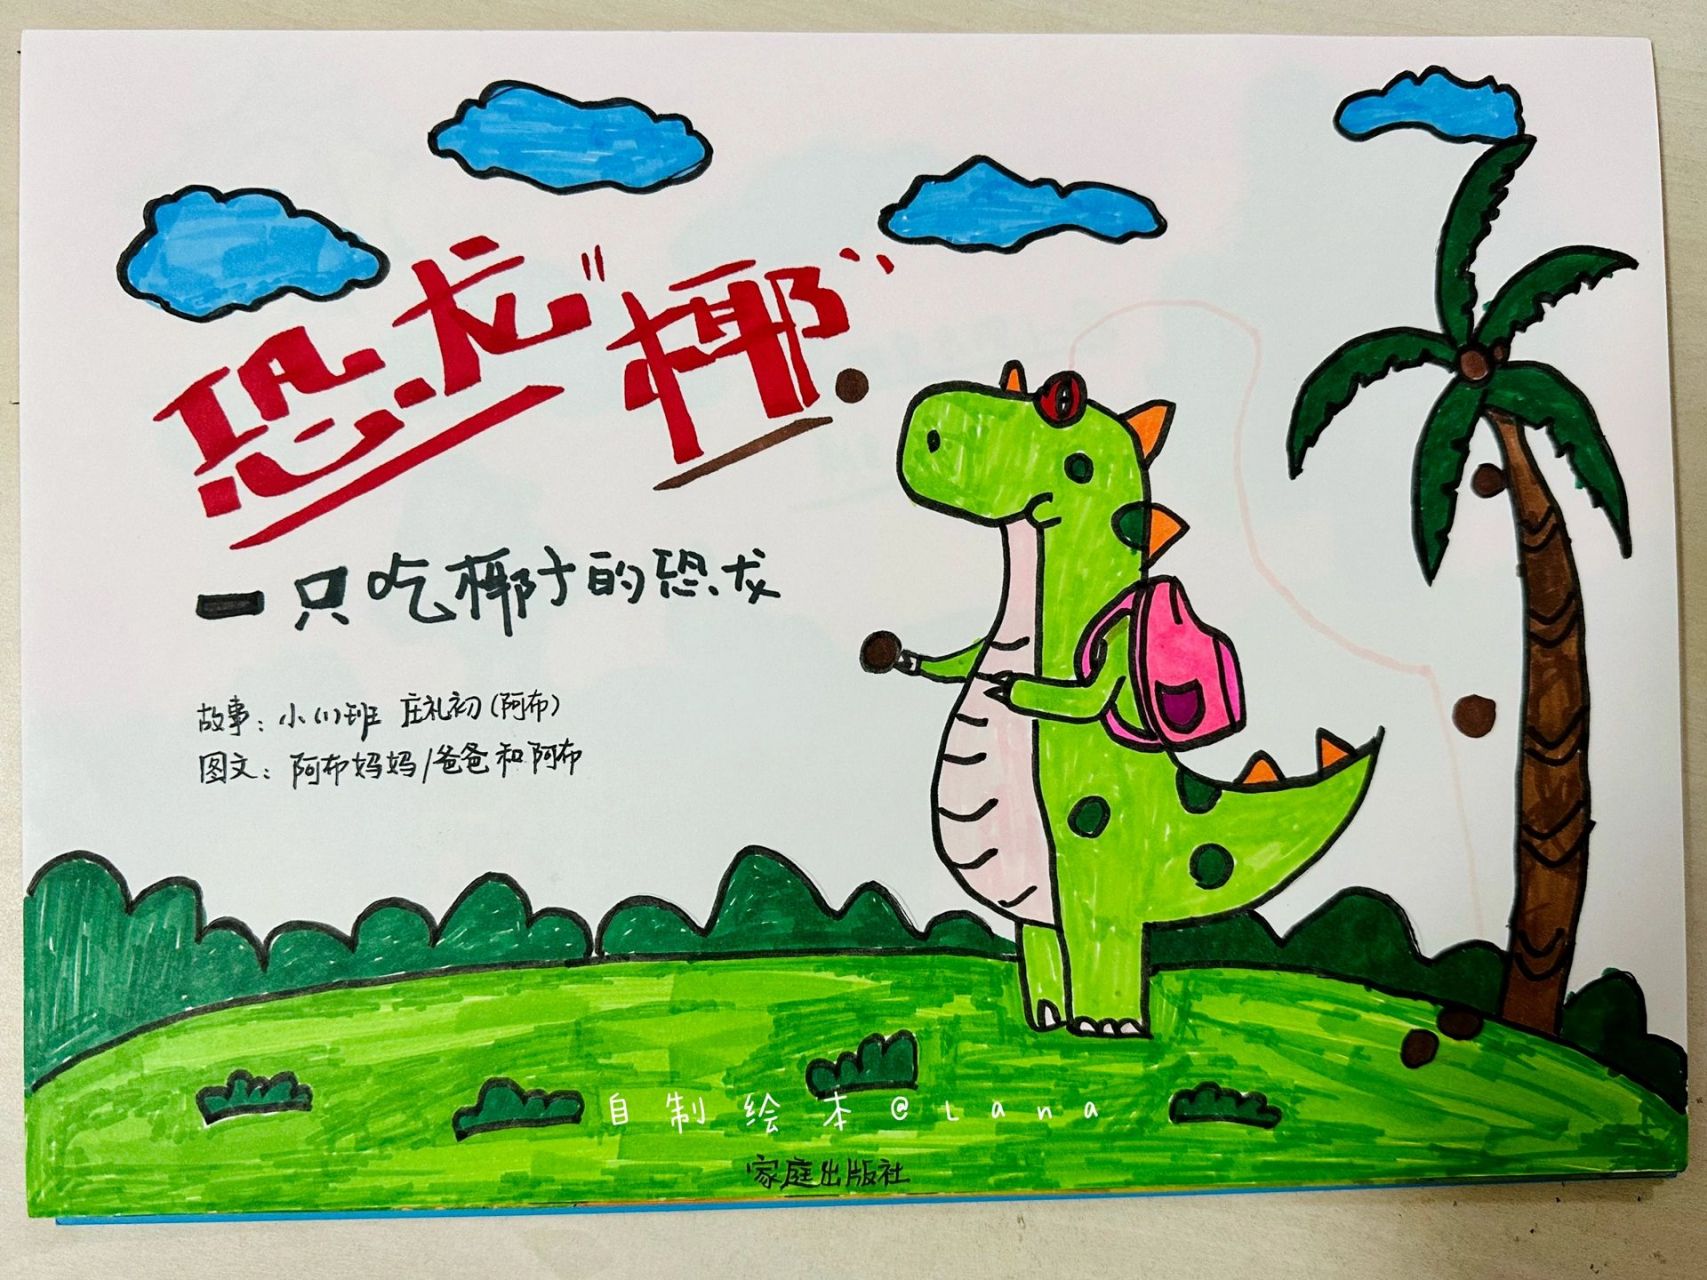 幼儿园自制绘本 绘本主题:《恐龙椰》 故事/编剧:阿布小朋友(3岁半)